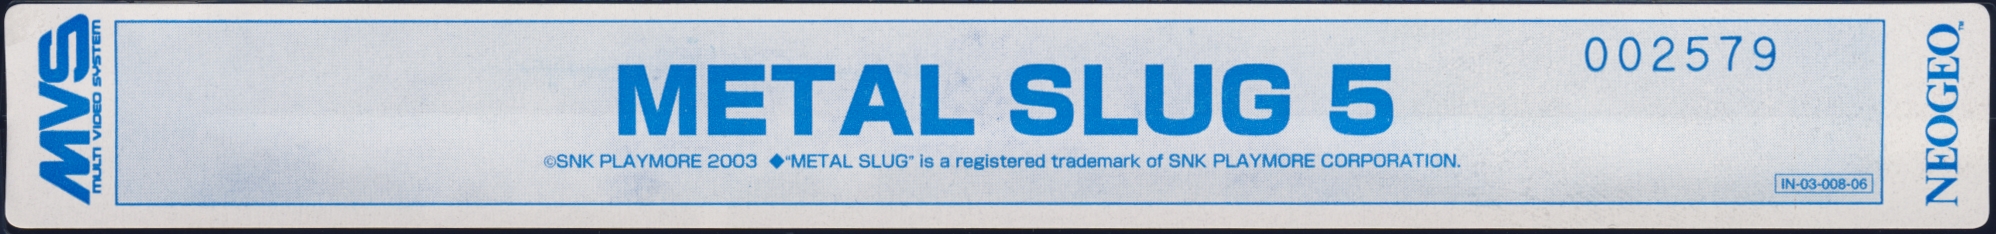 Metal slug 5 us label.jpg